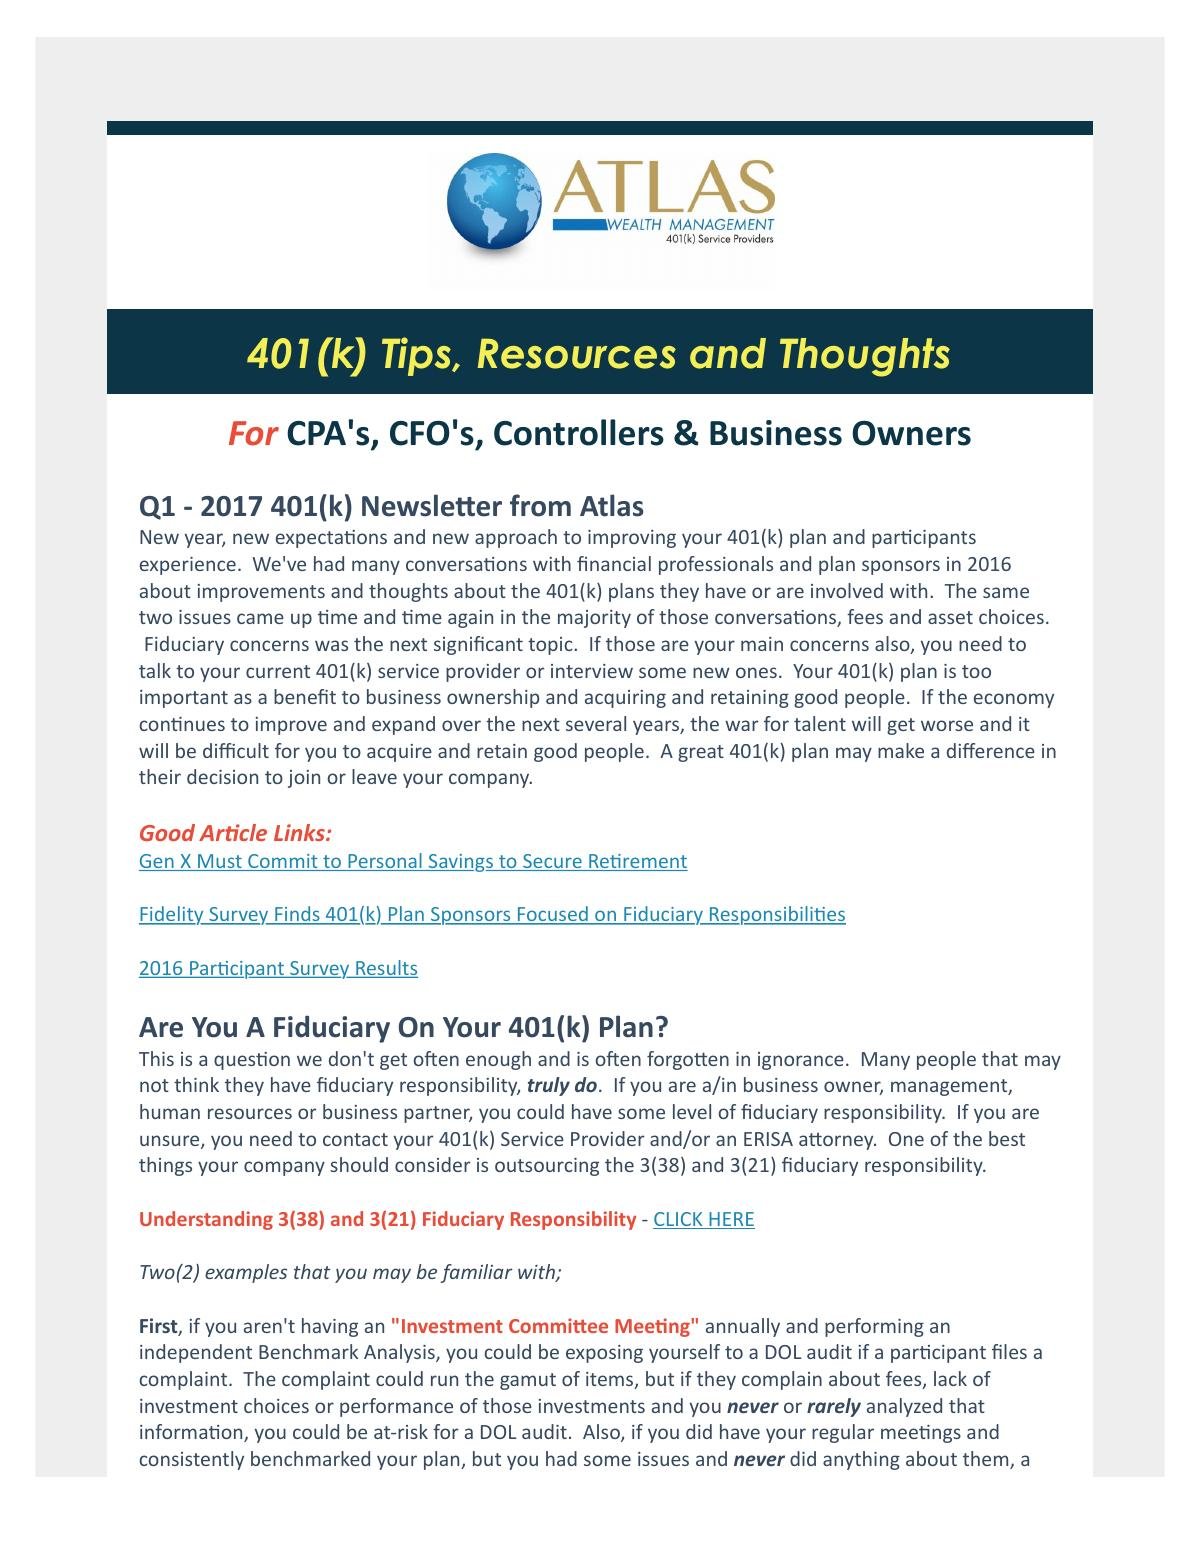 Atlas 401(k) Newsletter Q1 2017